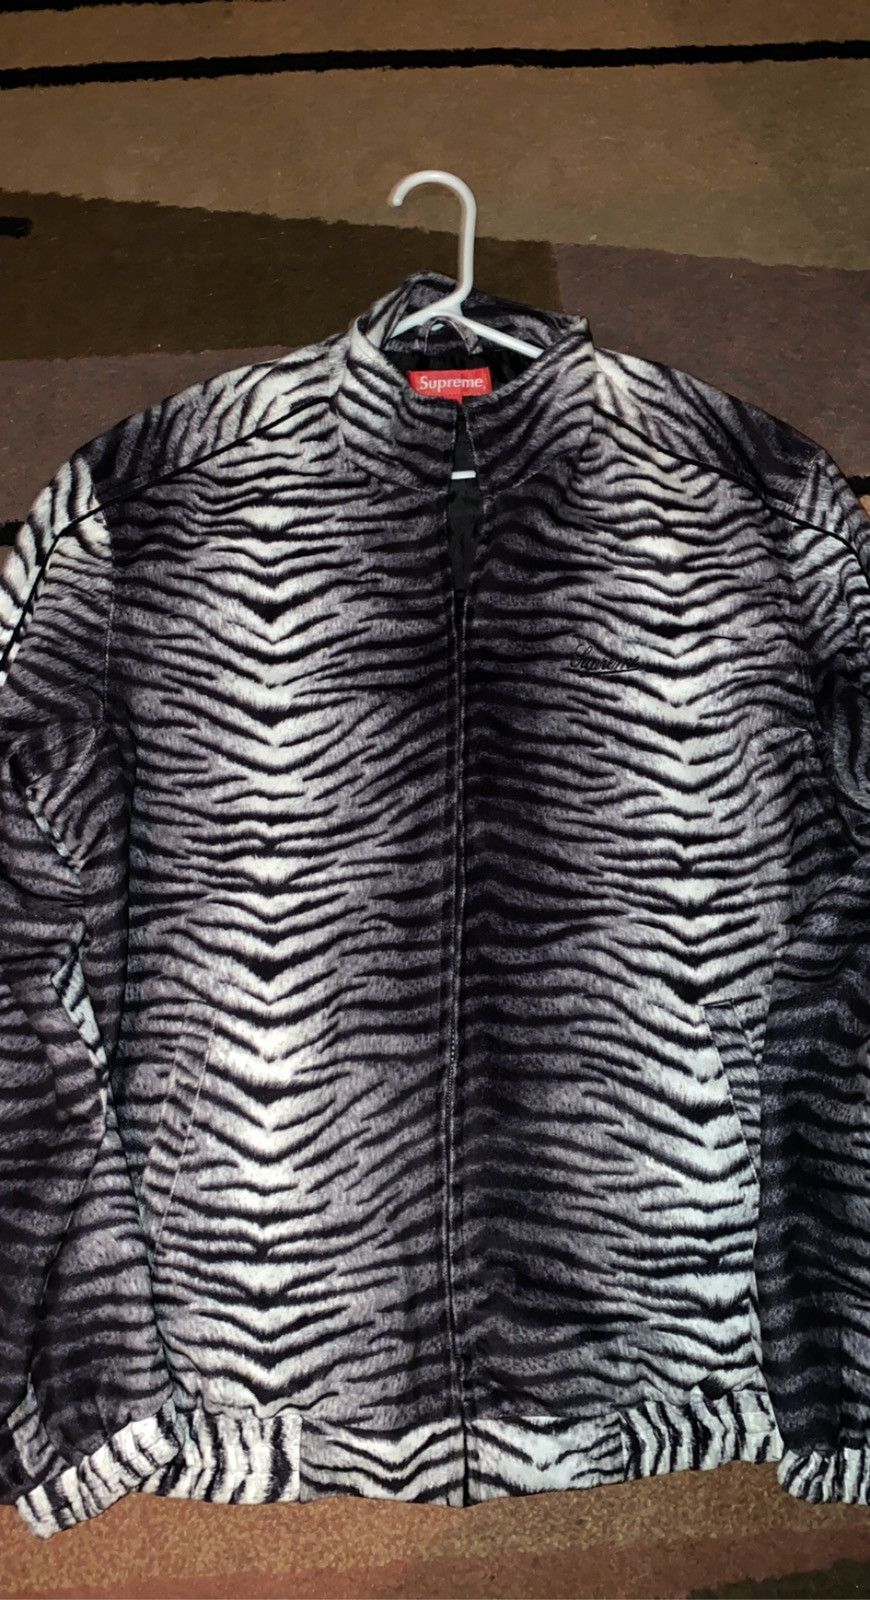 Supreme Tiger Stripe Track Jacket | Grailed